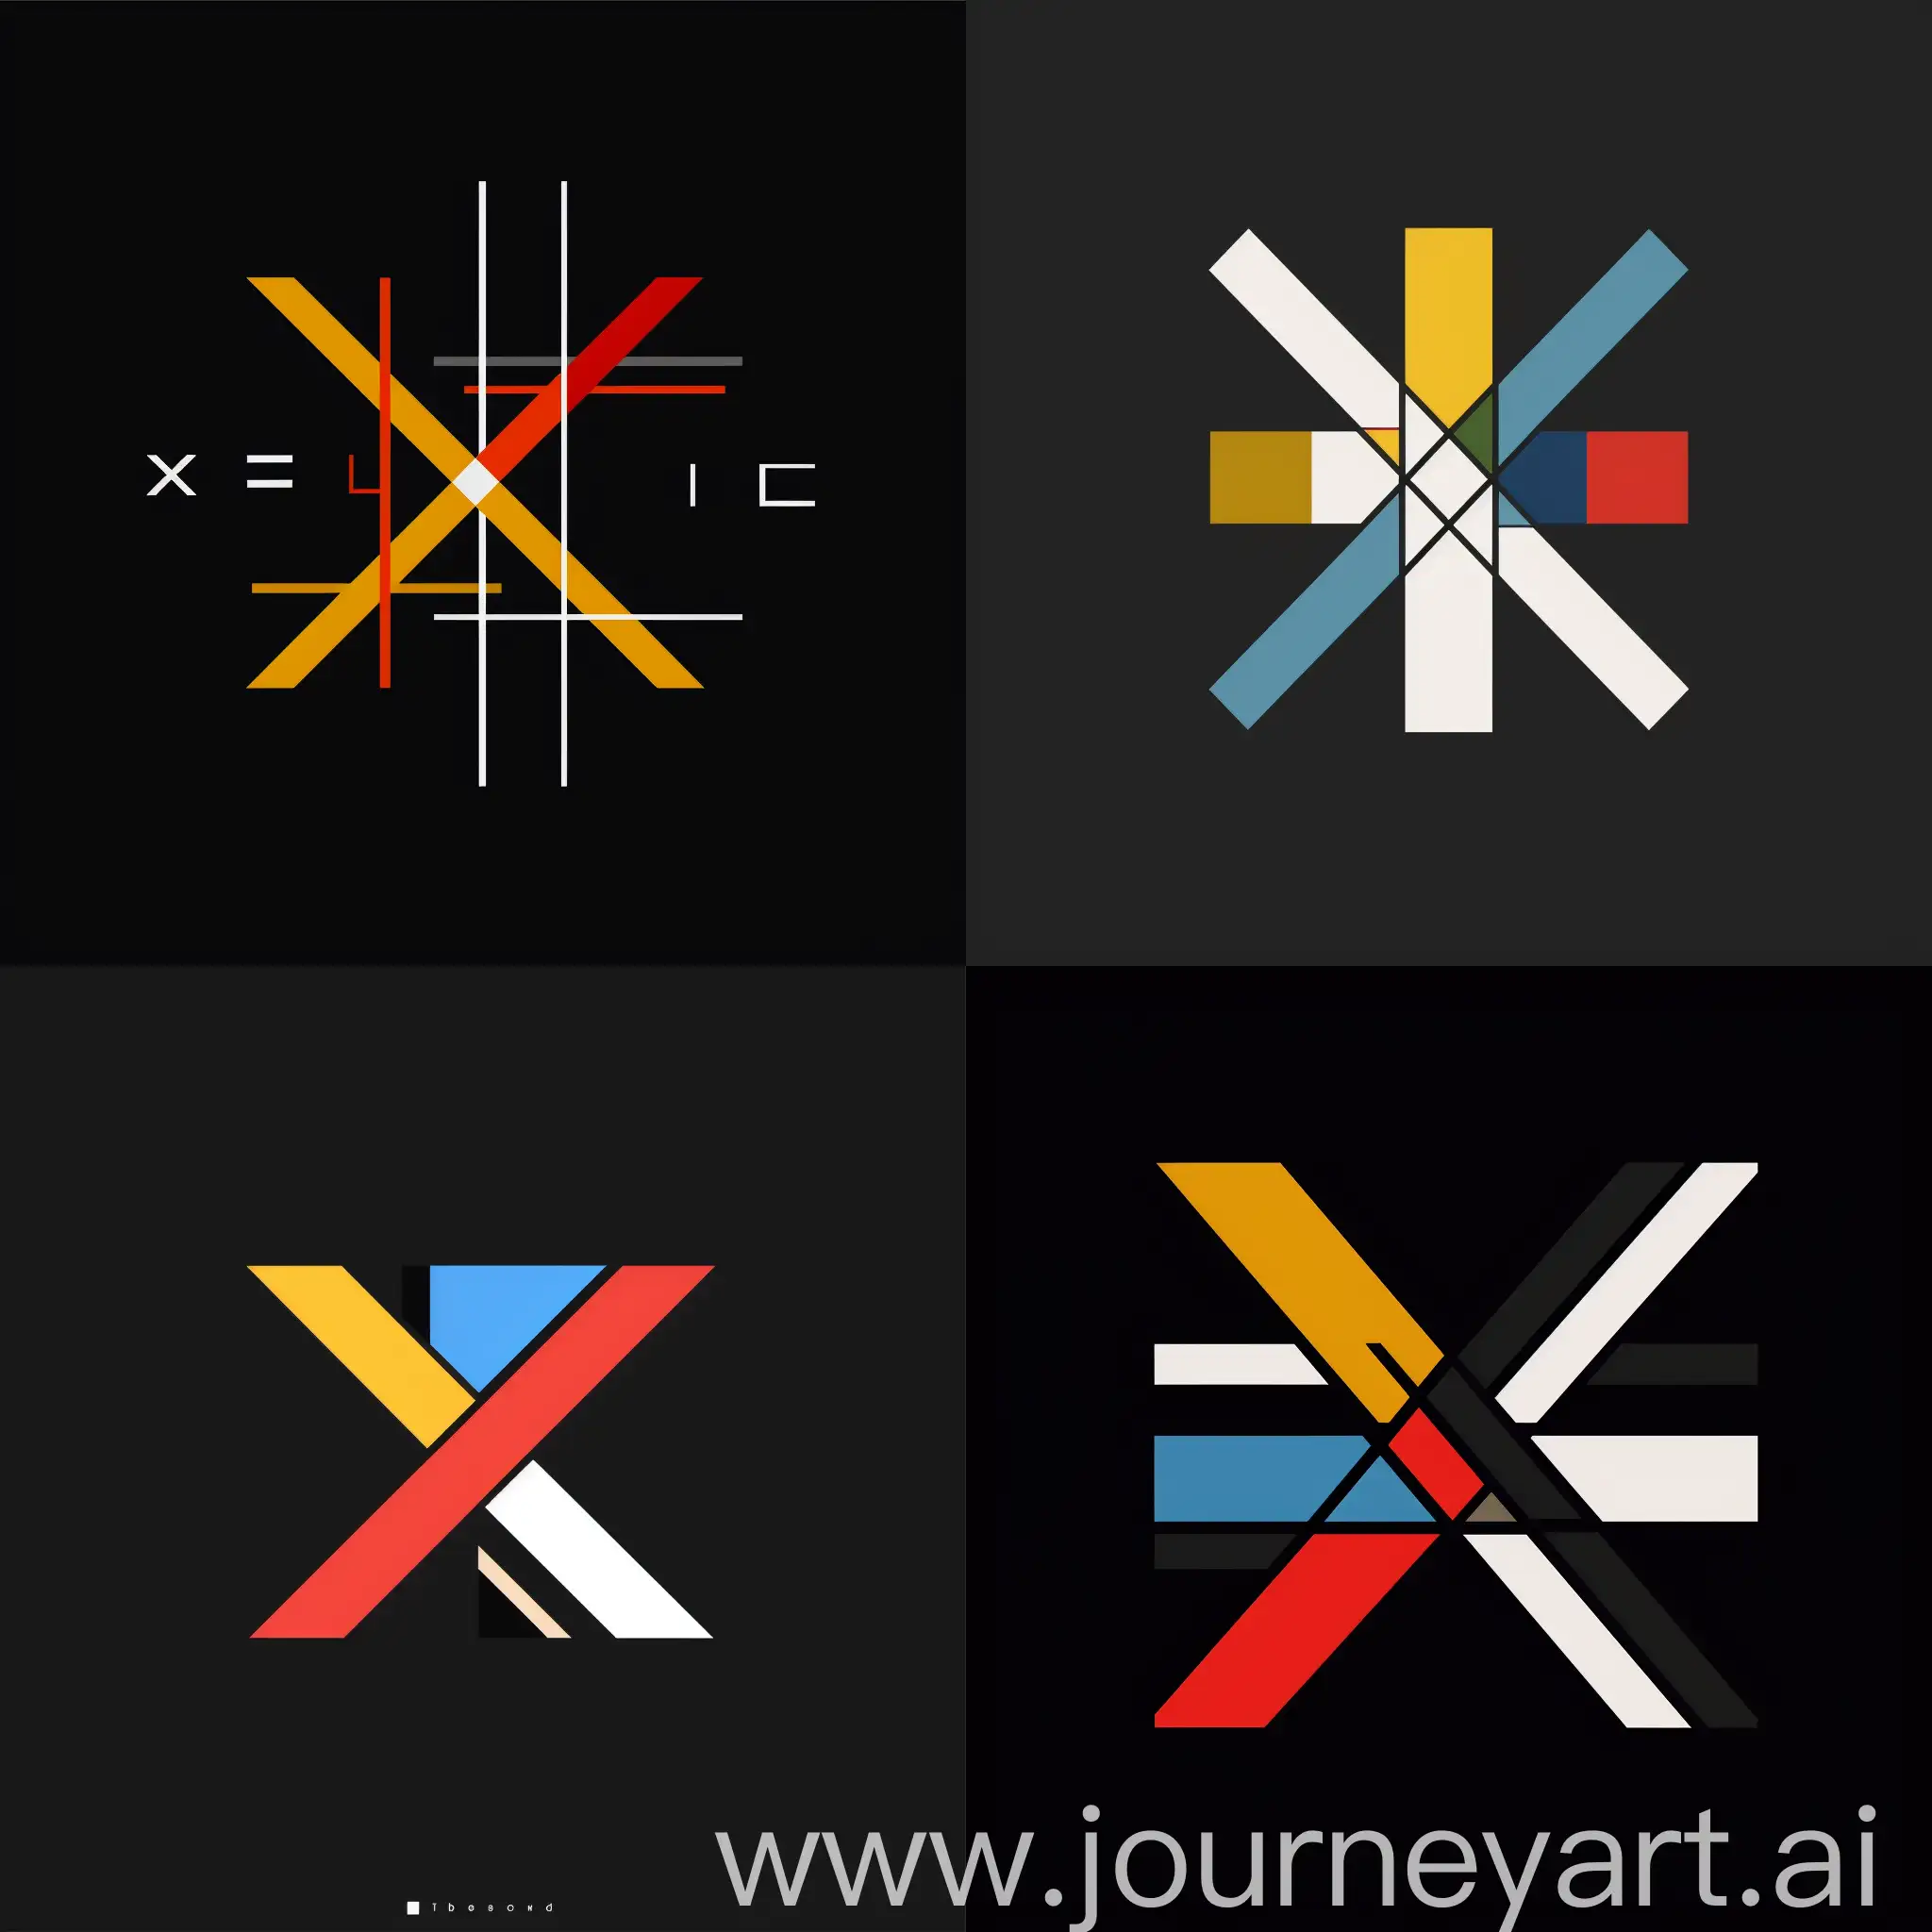 用“X极线”生成一个设计工作室的极简logo，颜色运用可参考蒙德里安色调